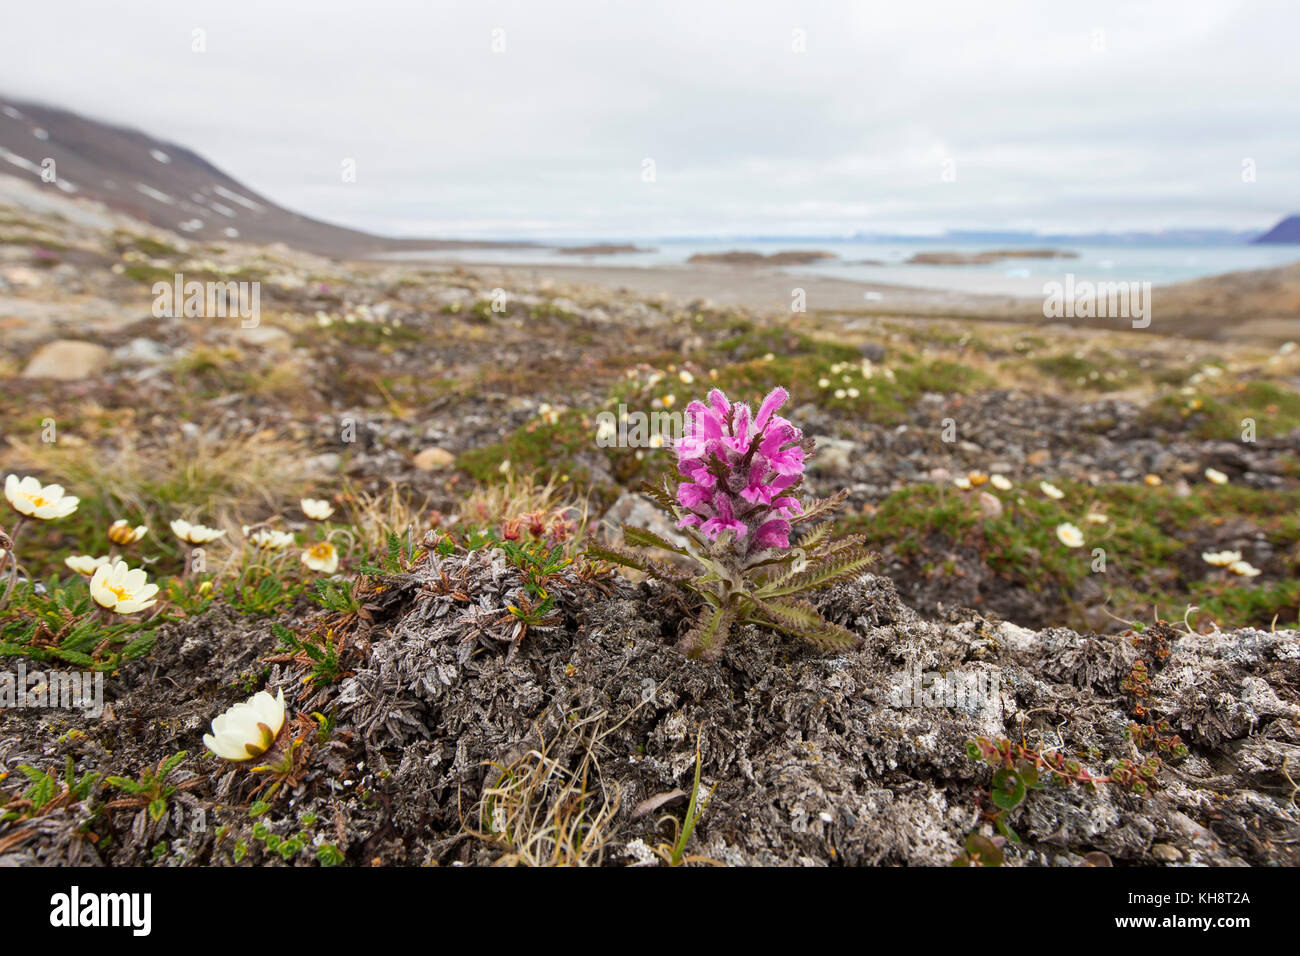 Woolly lousewort / Arctic hairy lousewort (Pedicularis dasyantha / Pedicularis lanata ssp. dasyantha) hemiparasite flowering on the tundra, Svalbard Stock Photo